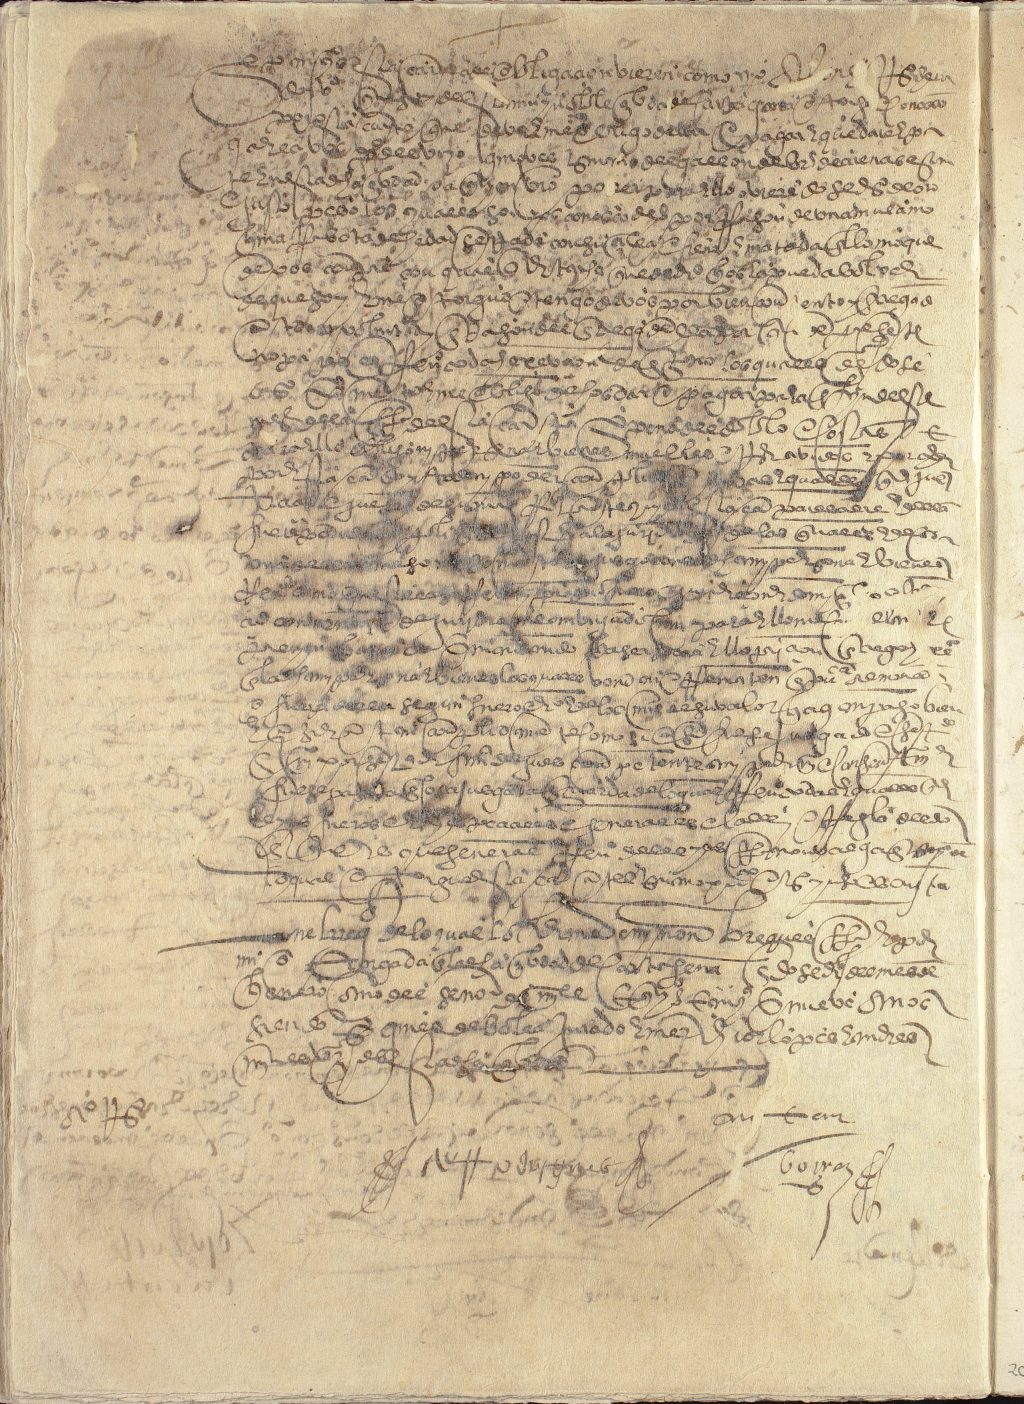 Obligación de pago de Alonso Rodríguez, herrero, vecino de Cartagena, a favor de Pedro Desvayo, genovés, por doce ducados de oro.